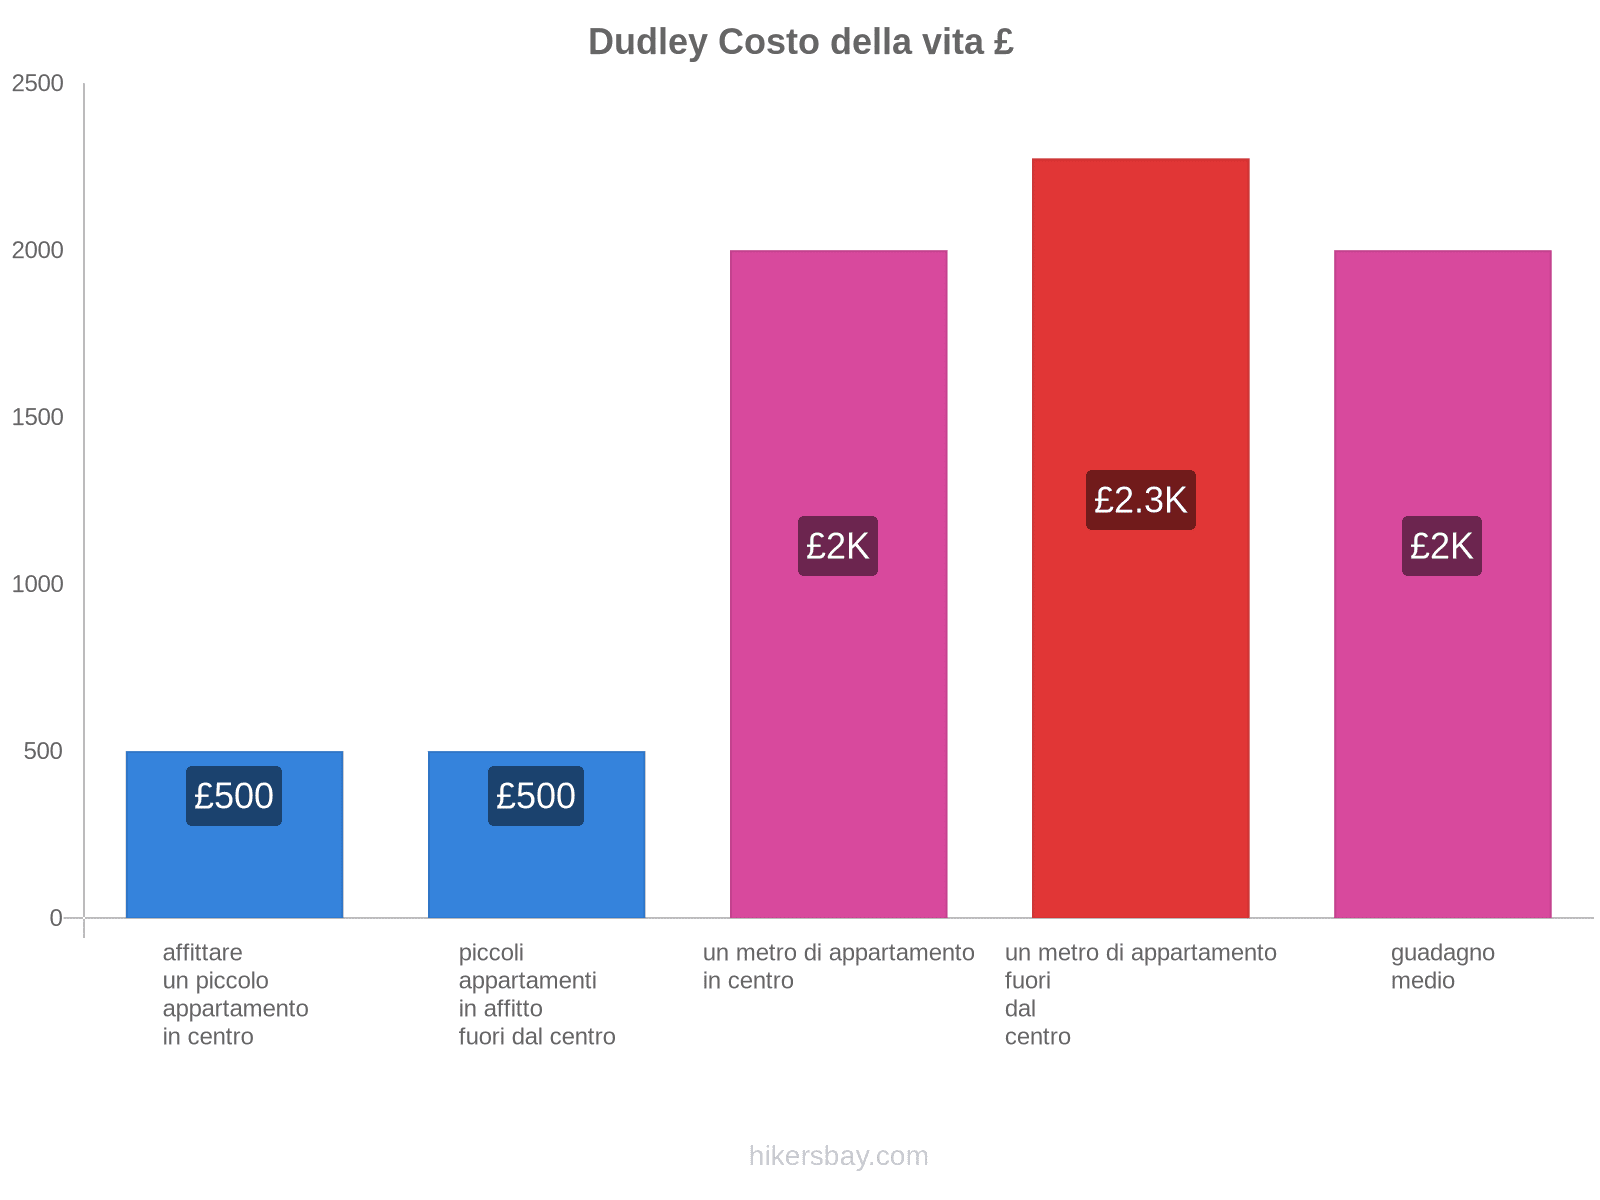 Dudley costo della vita hikersbay.com